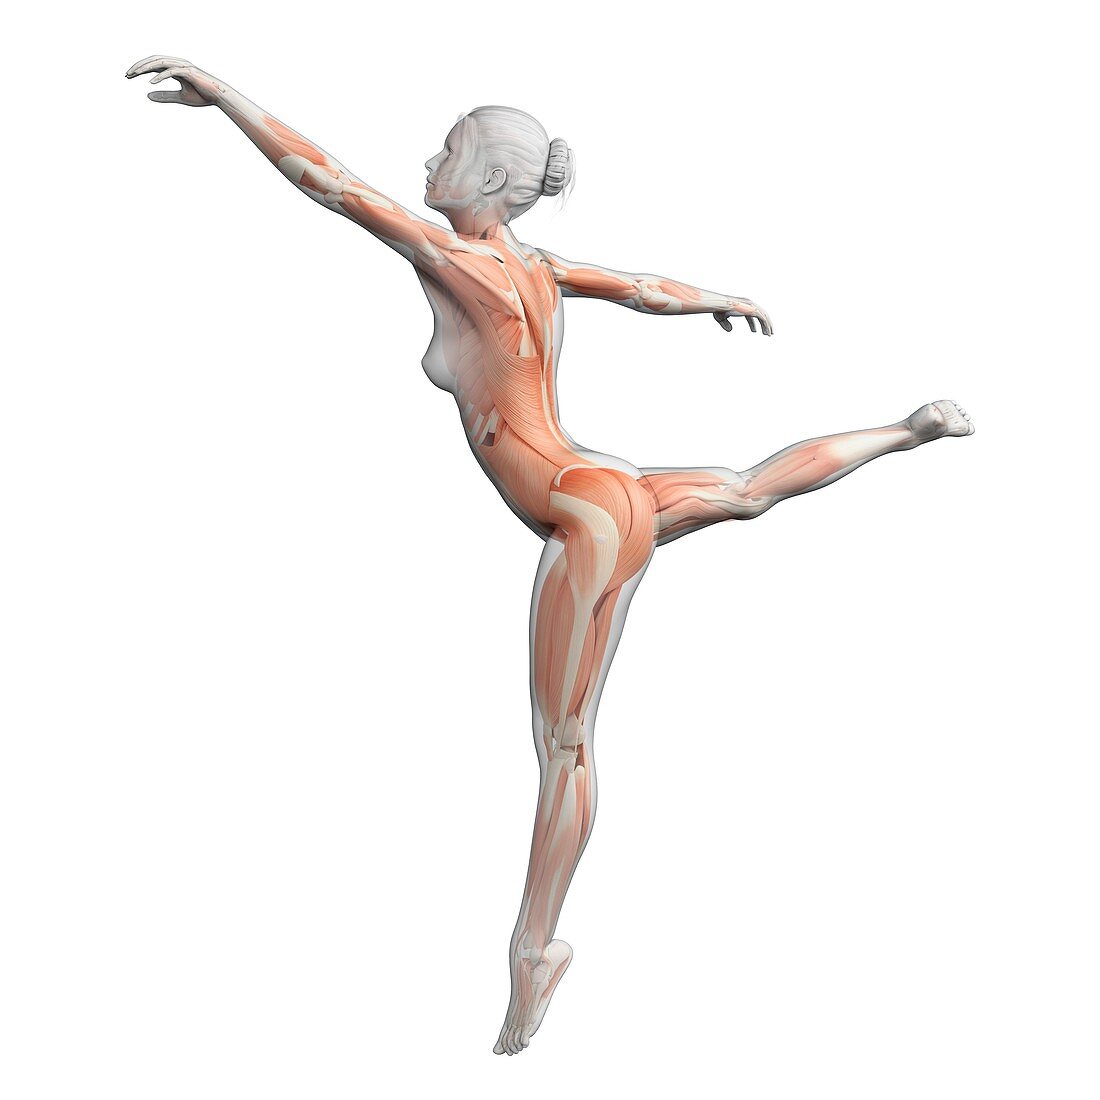 Female dancer,illustration